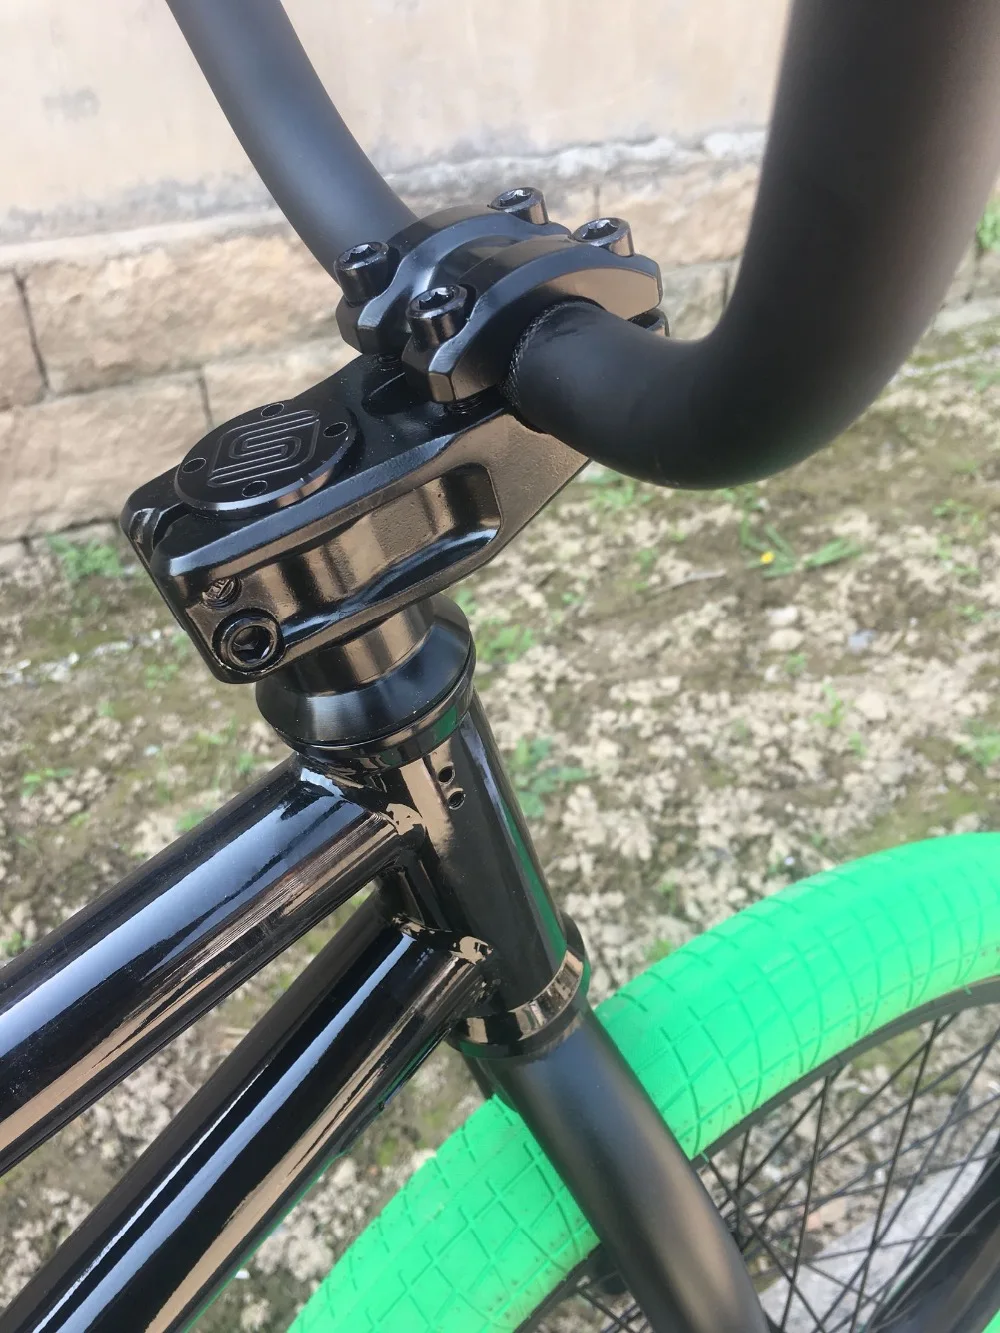 BMX diy велосипеды v2 20' полный crmo полный подшипники для продажи